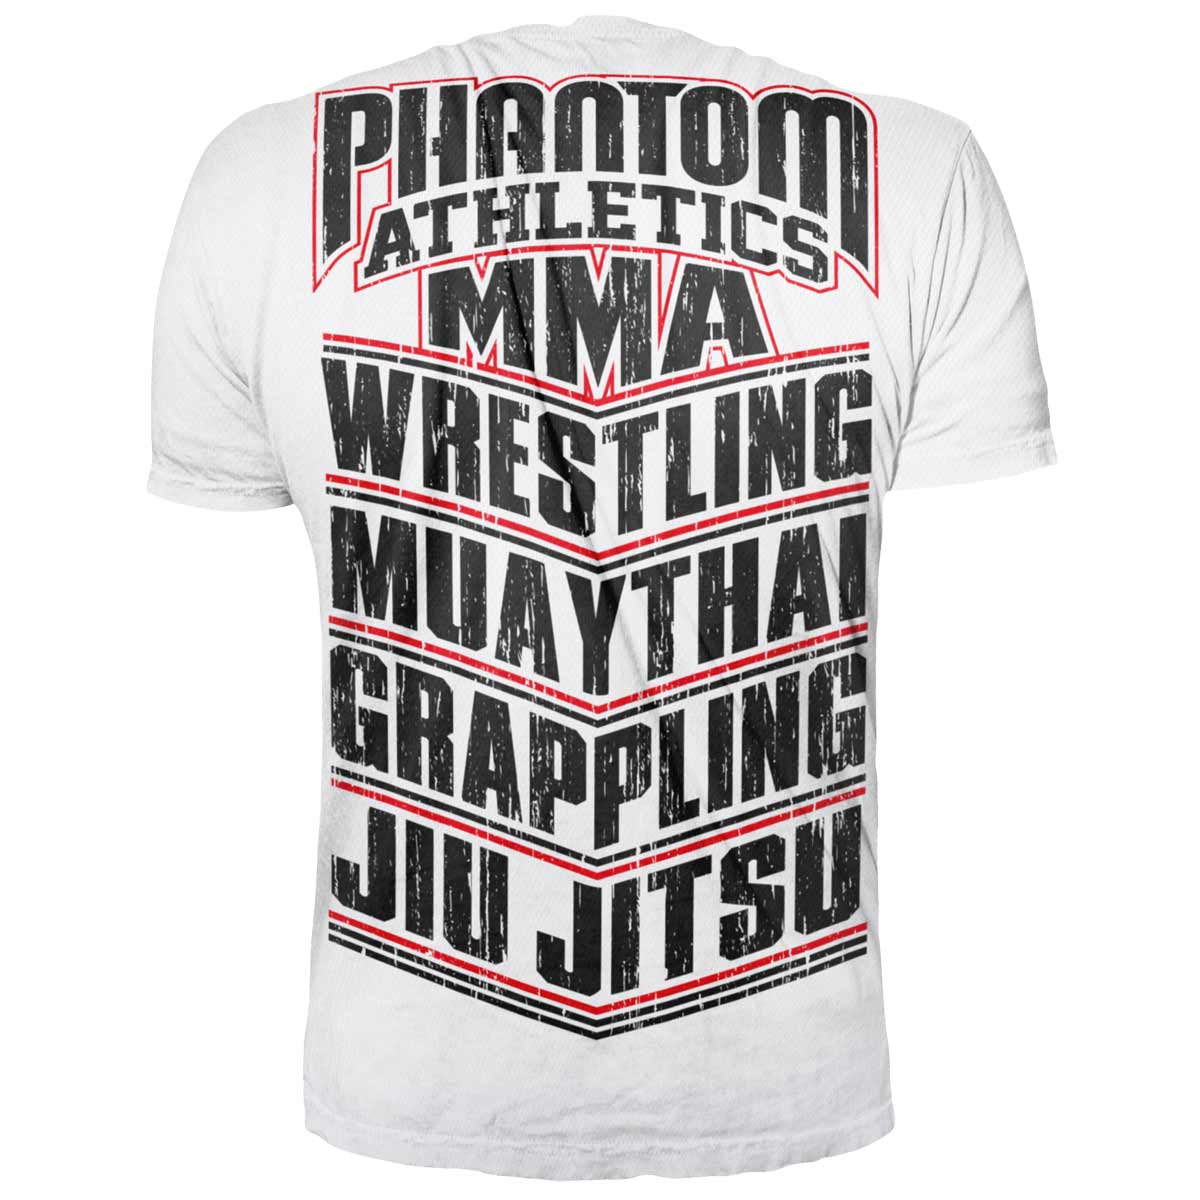 Tričko Phantom pre všetkých bojových umelcov. S nápismi MMA, WRESTLING, MUAY THAI, GRAPPLING, JIU JITSU. Ideálne pre váš bojový tréning.